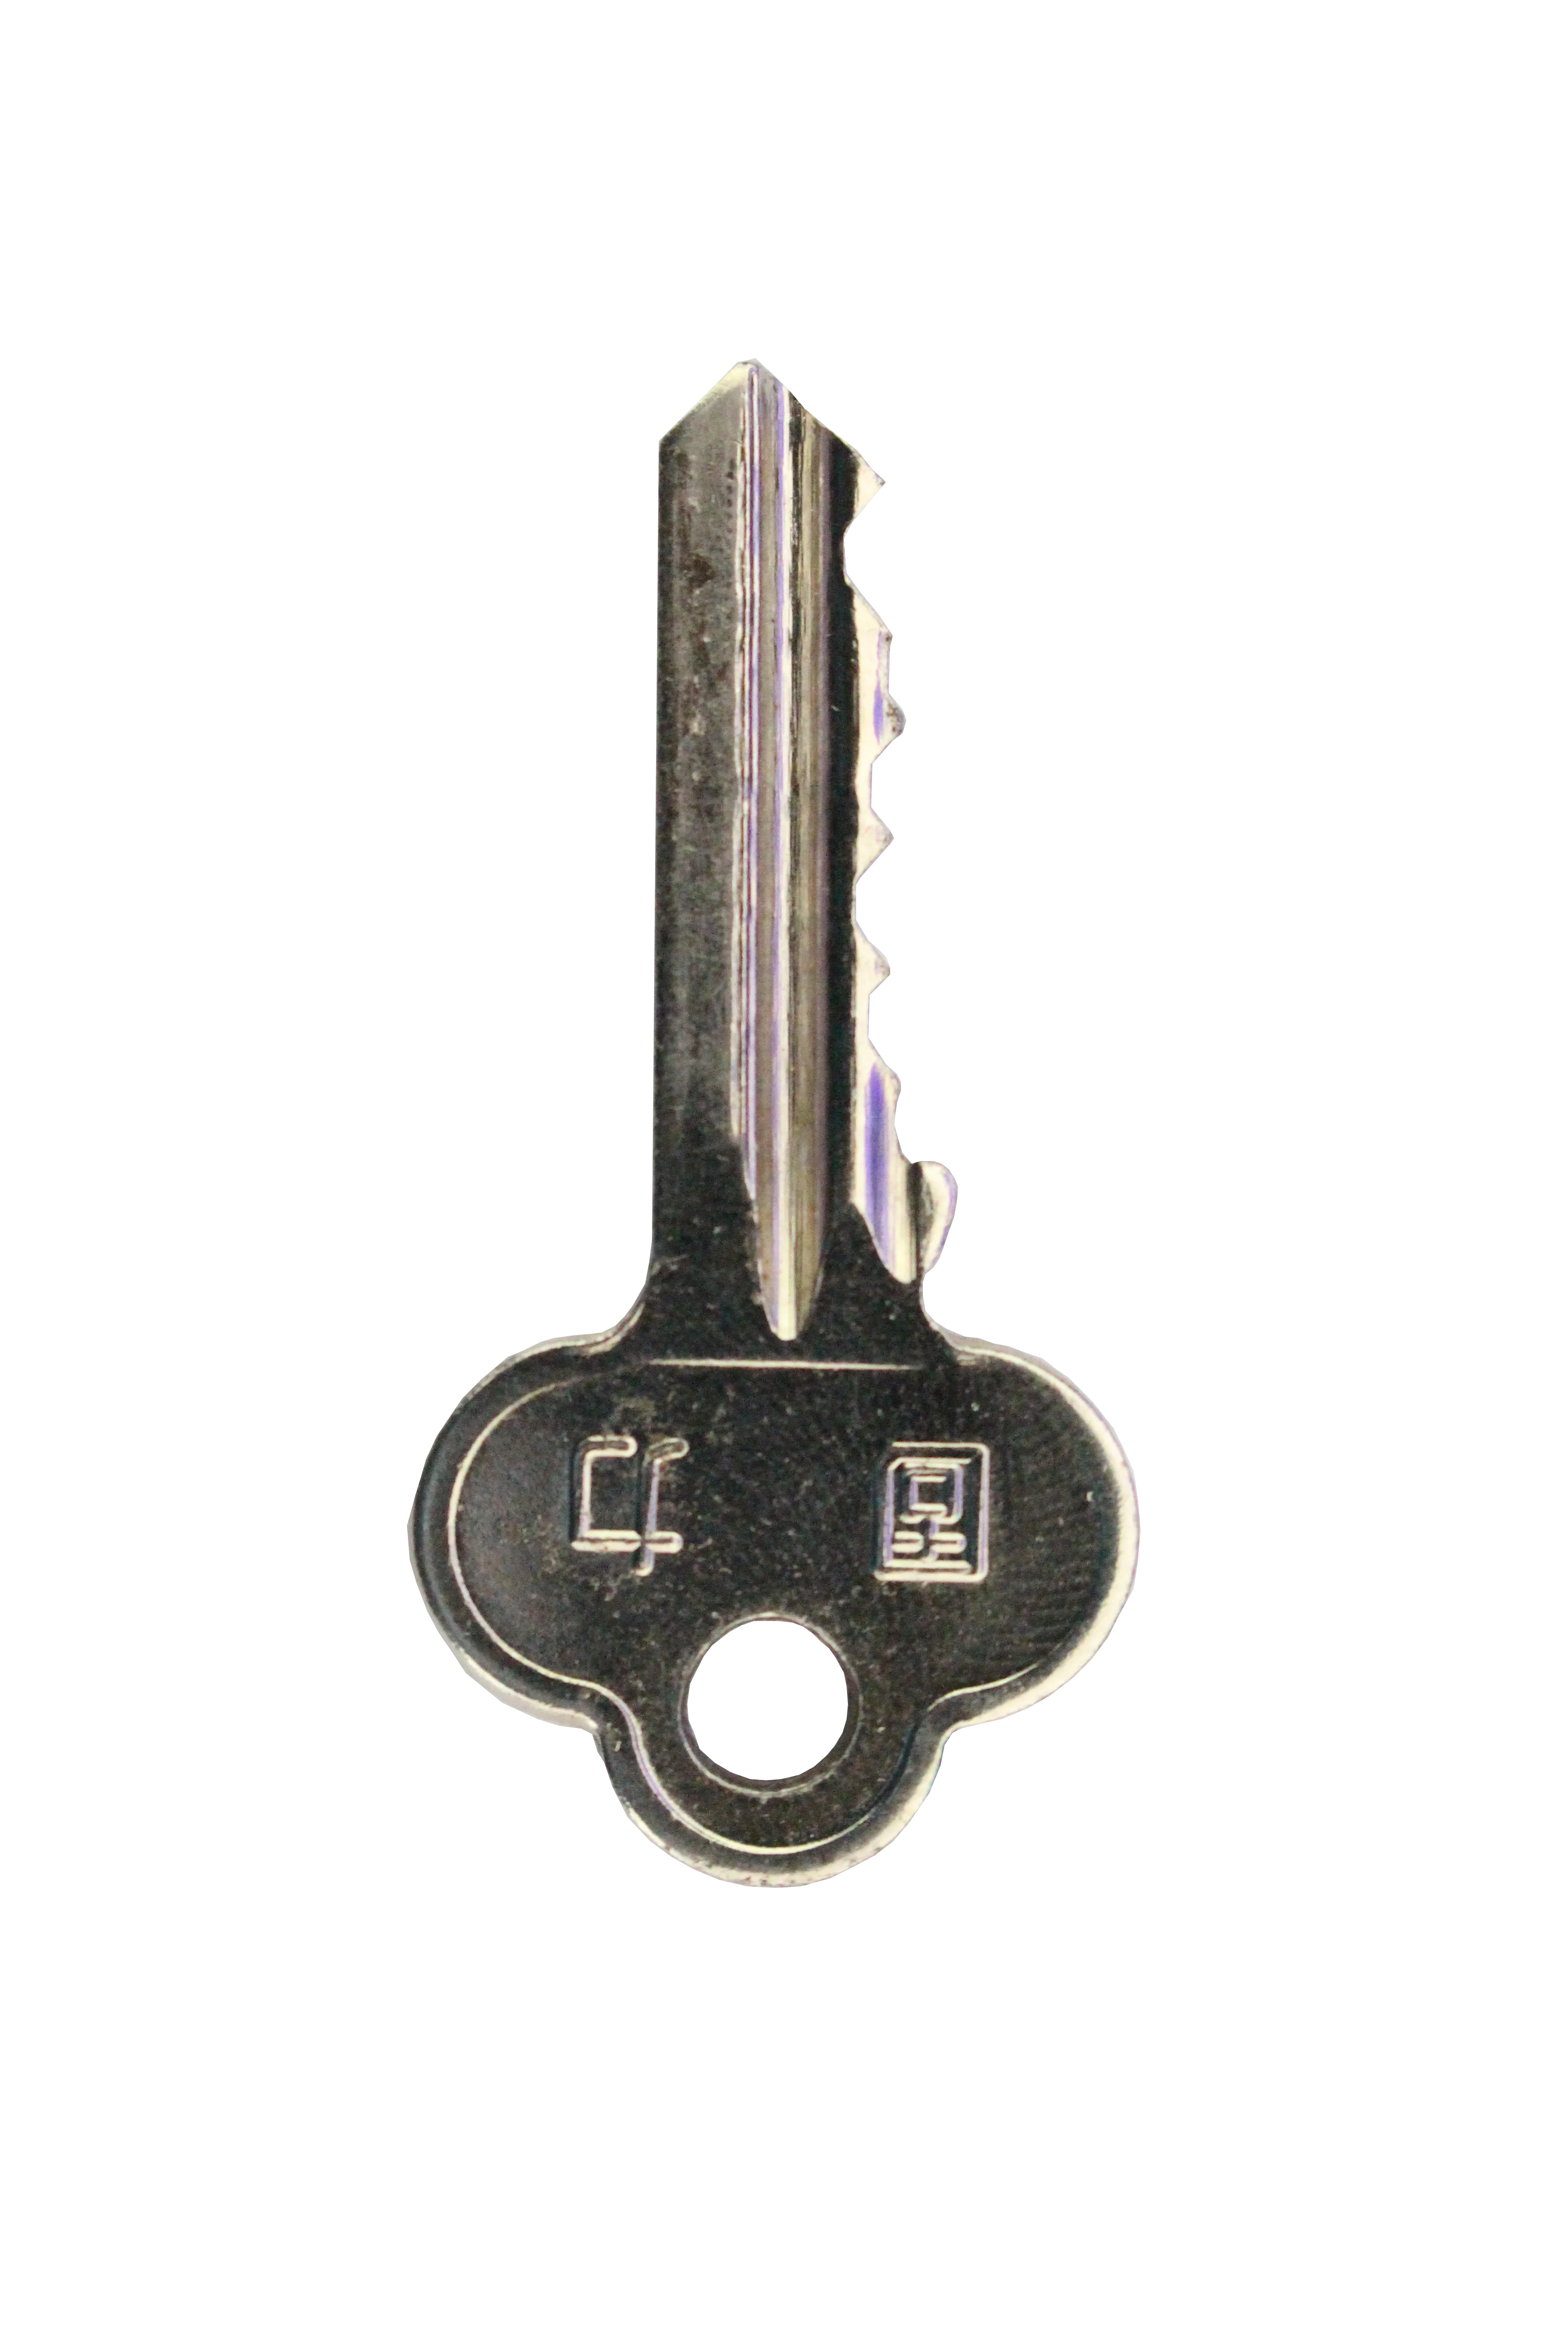 Aes key for pubg фото 47